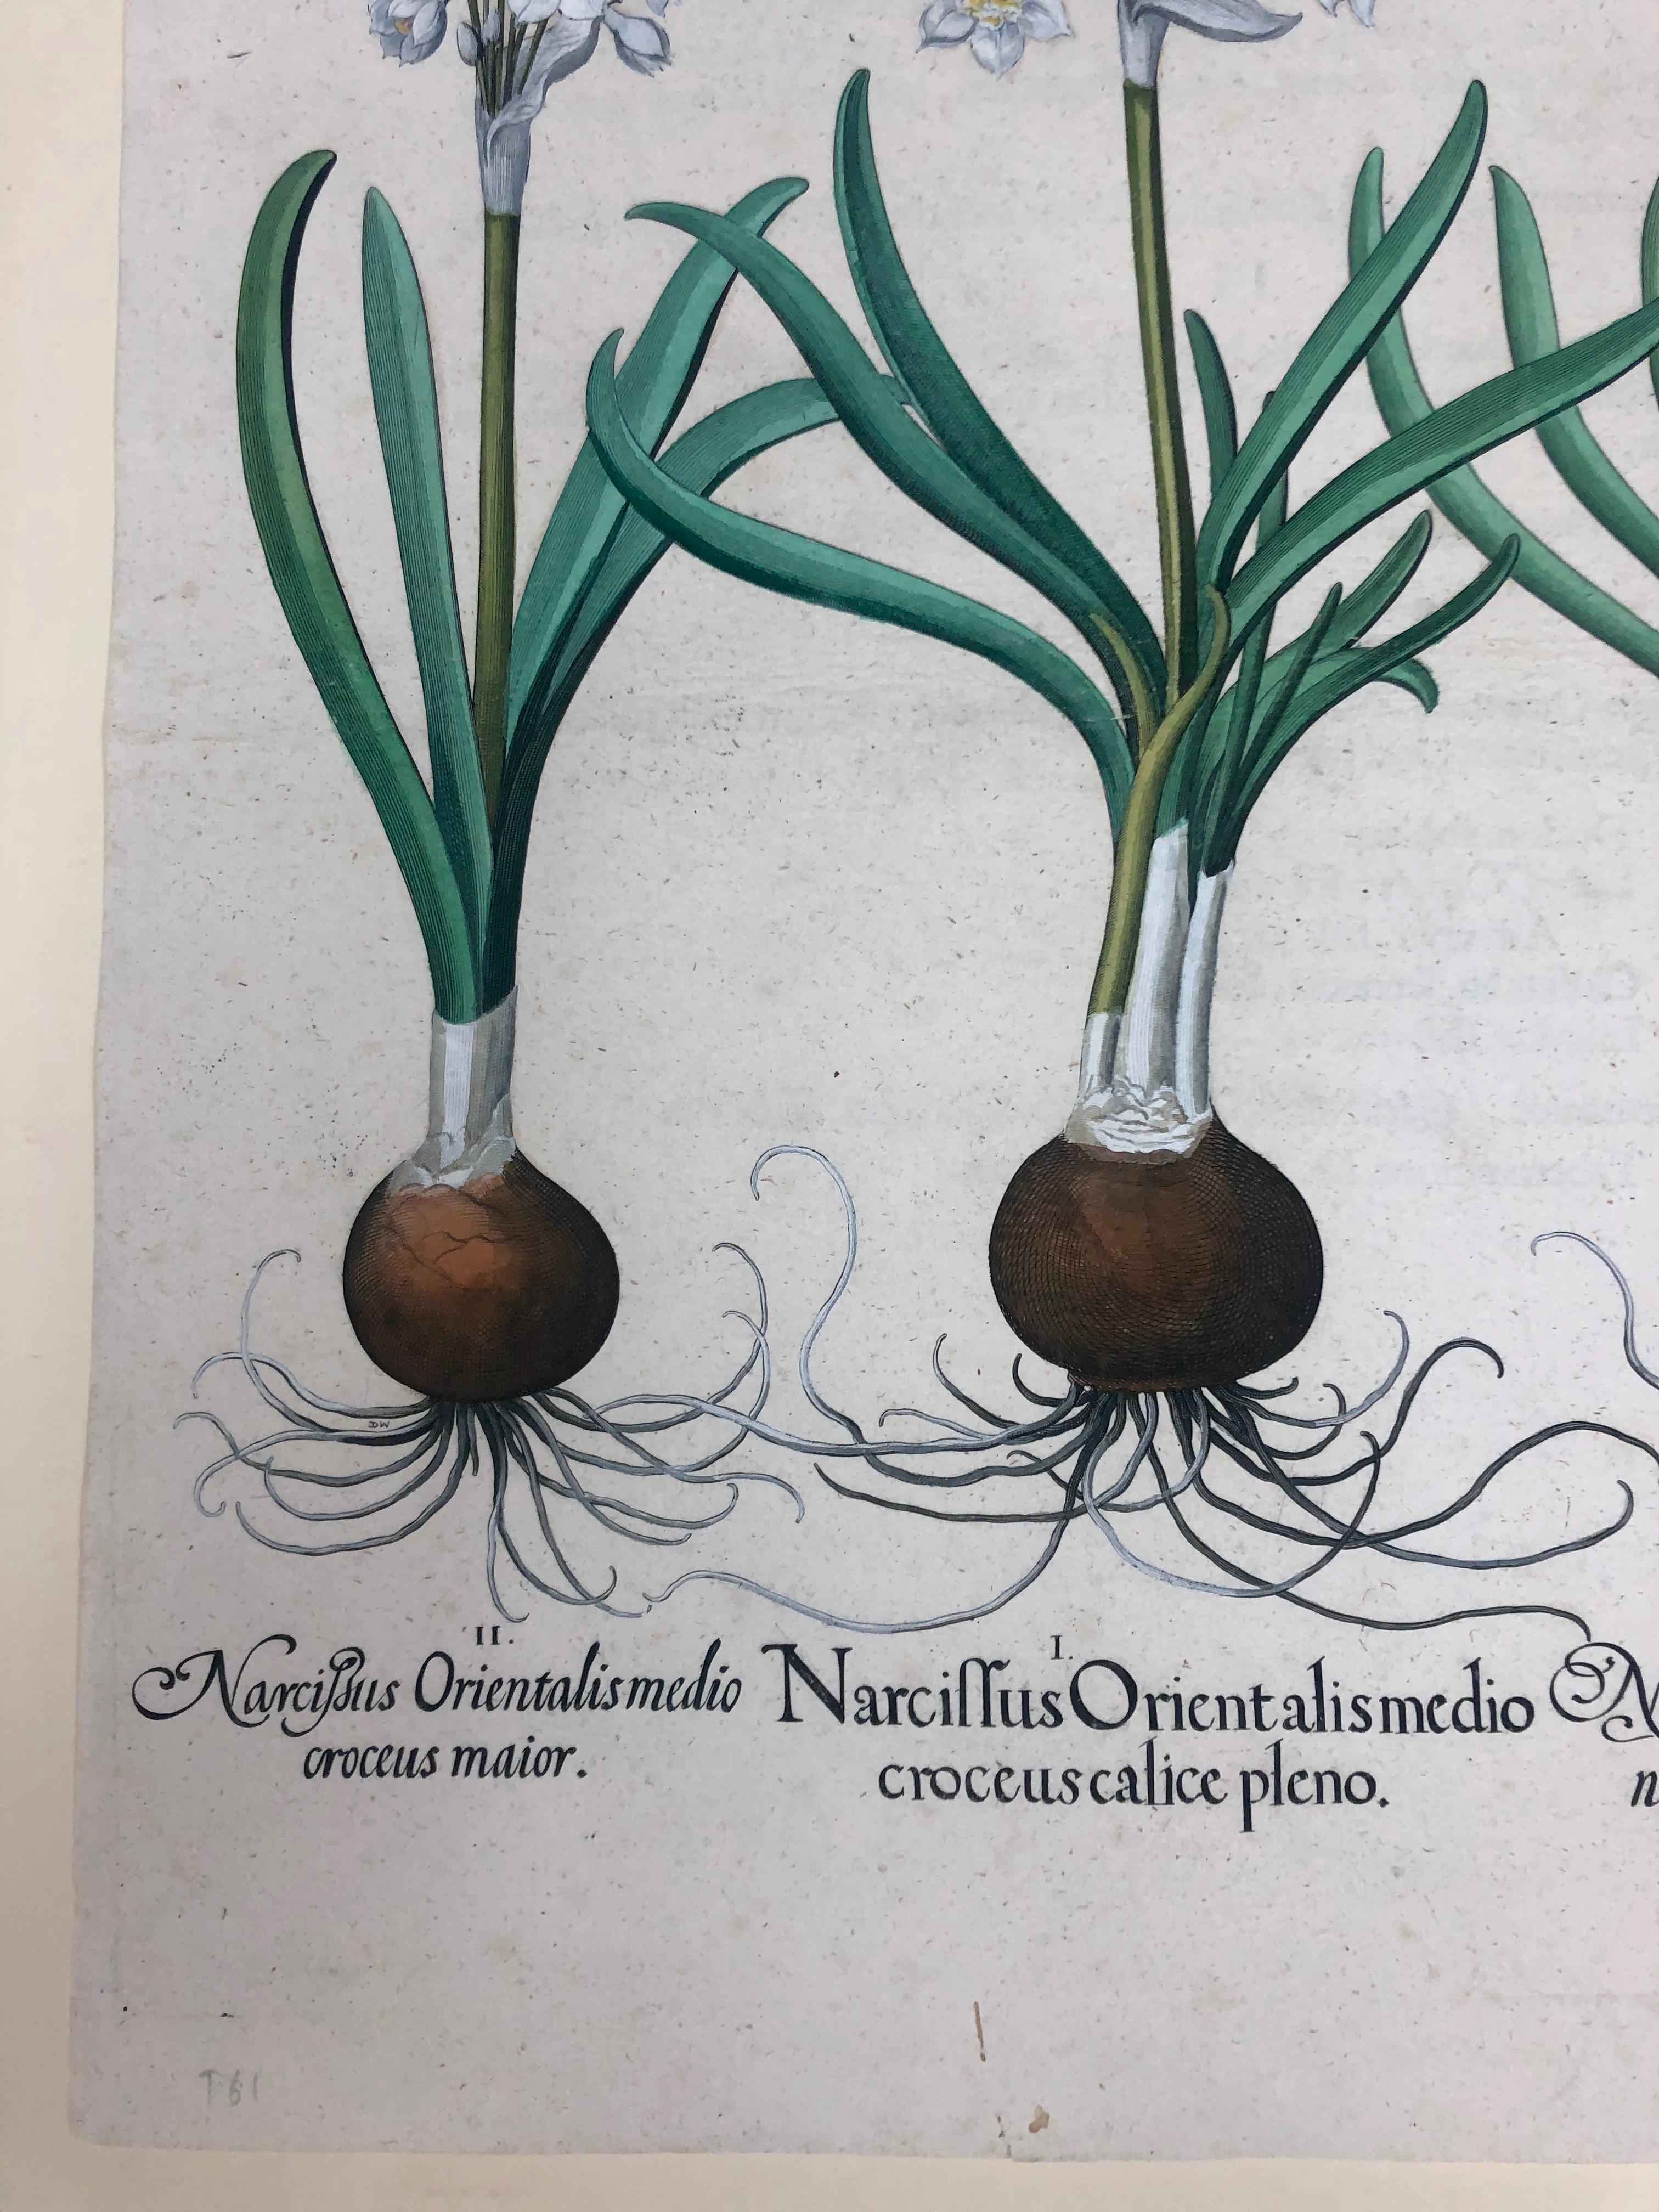 Basilius Besler Narcissus Orientalis Medio Croceus Calice Pleno
Hand colored engraving 21.5